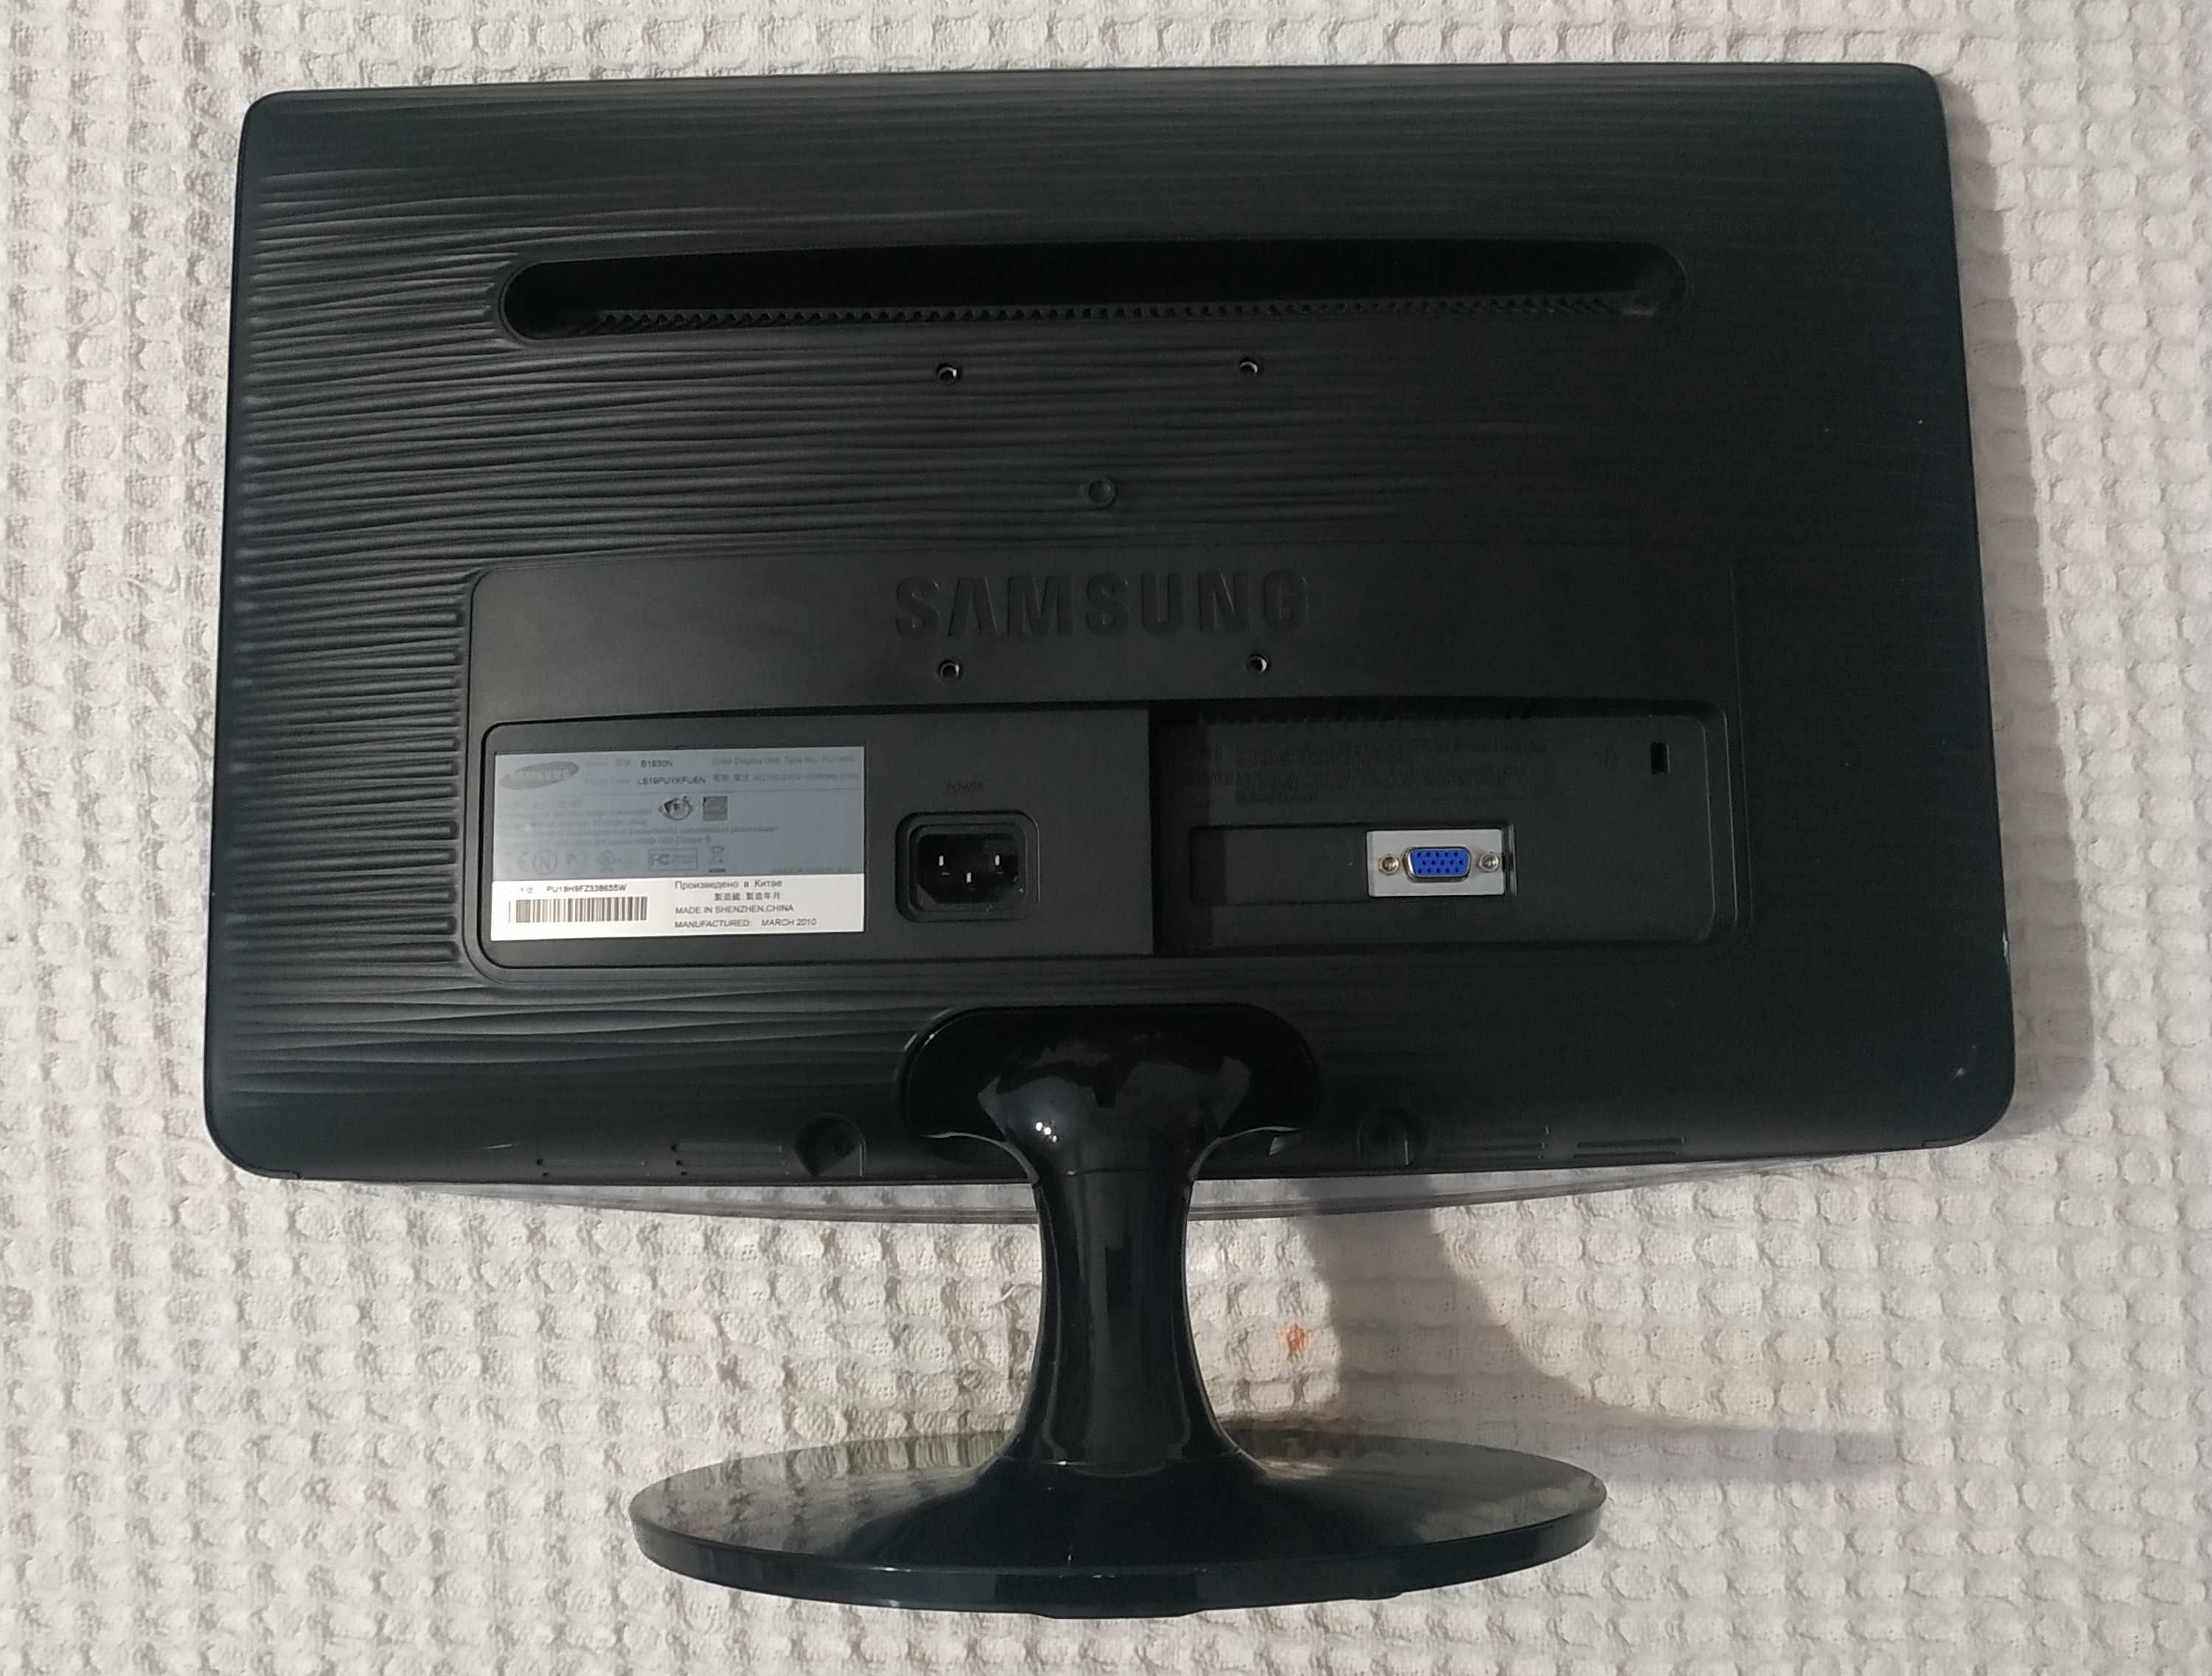 Monitor da Samsung 19"